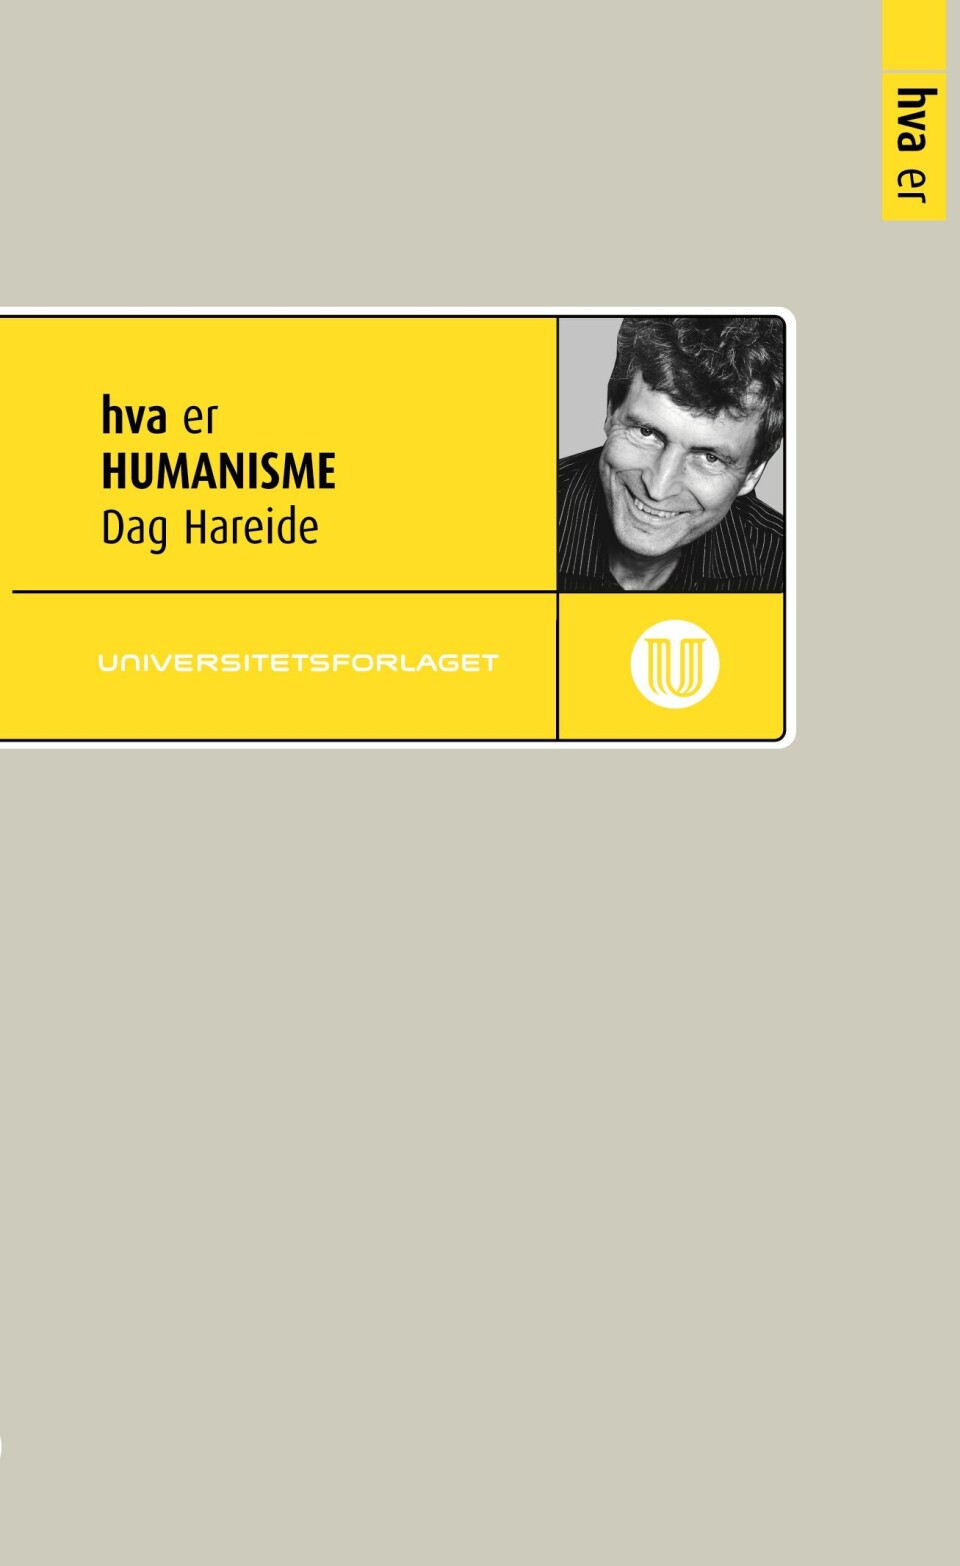 Rektor ved Nansenskolen, Dag Hareide er aktuell med boken Hva er humanisme (Universitetsforlaget 2011)